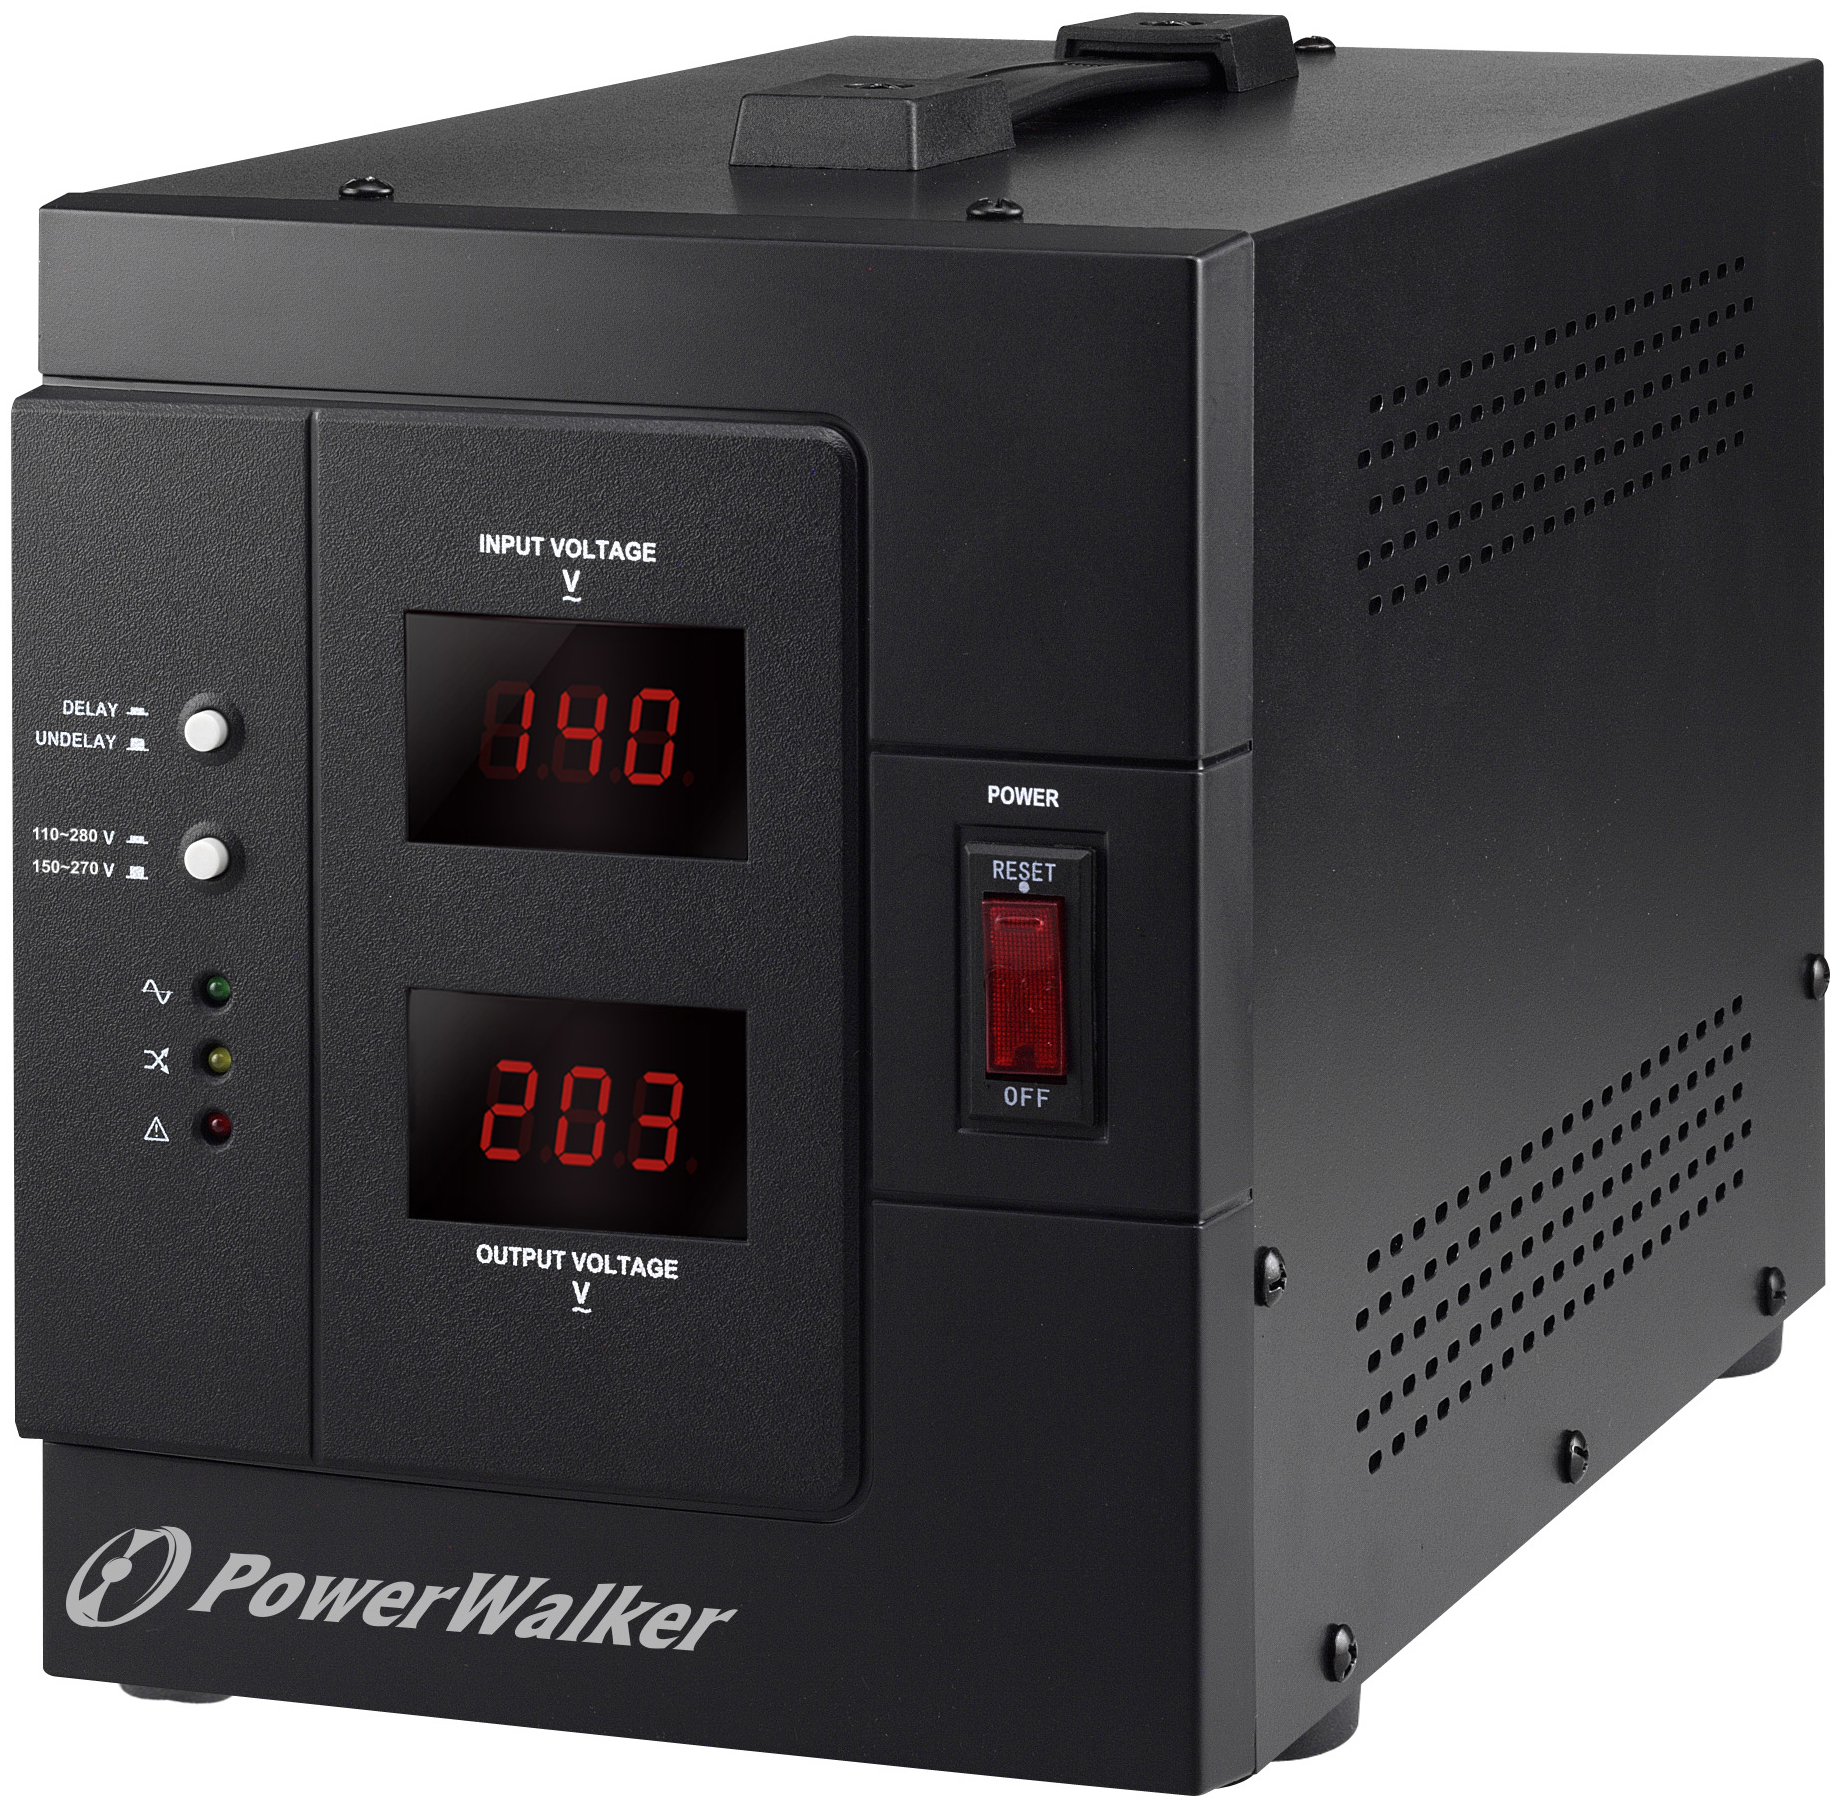 POWERWALKER SIV 3000 2400W, | AVR AVR